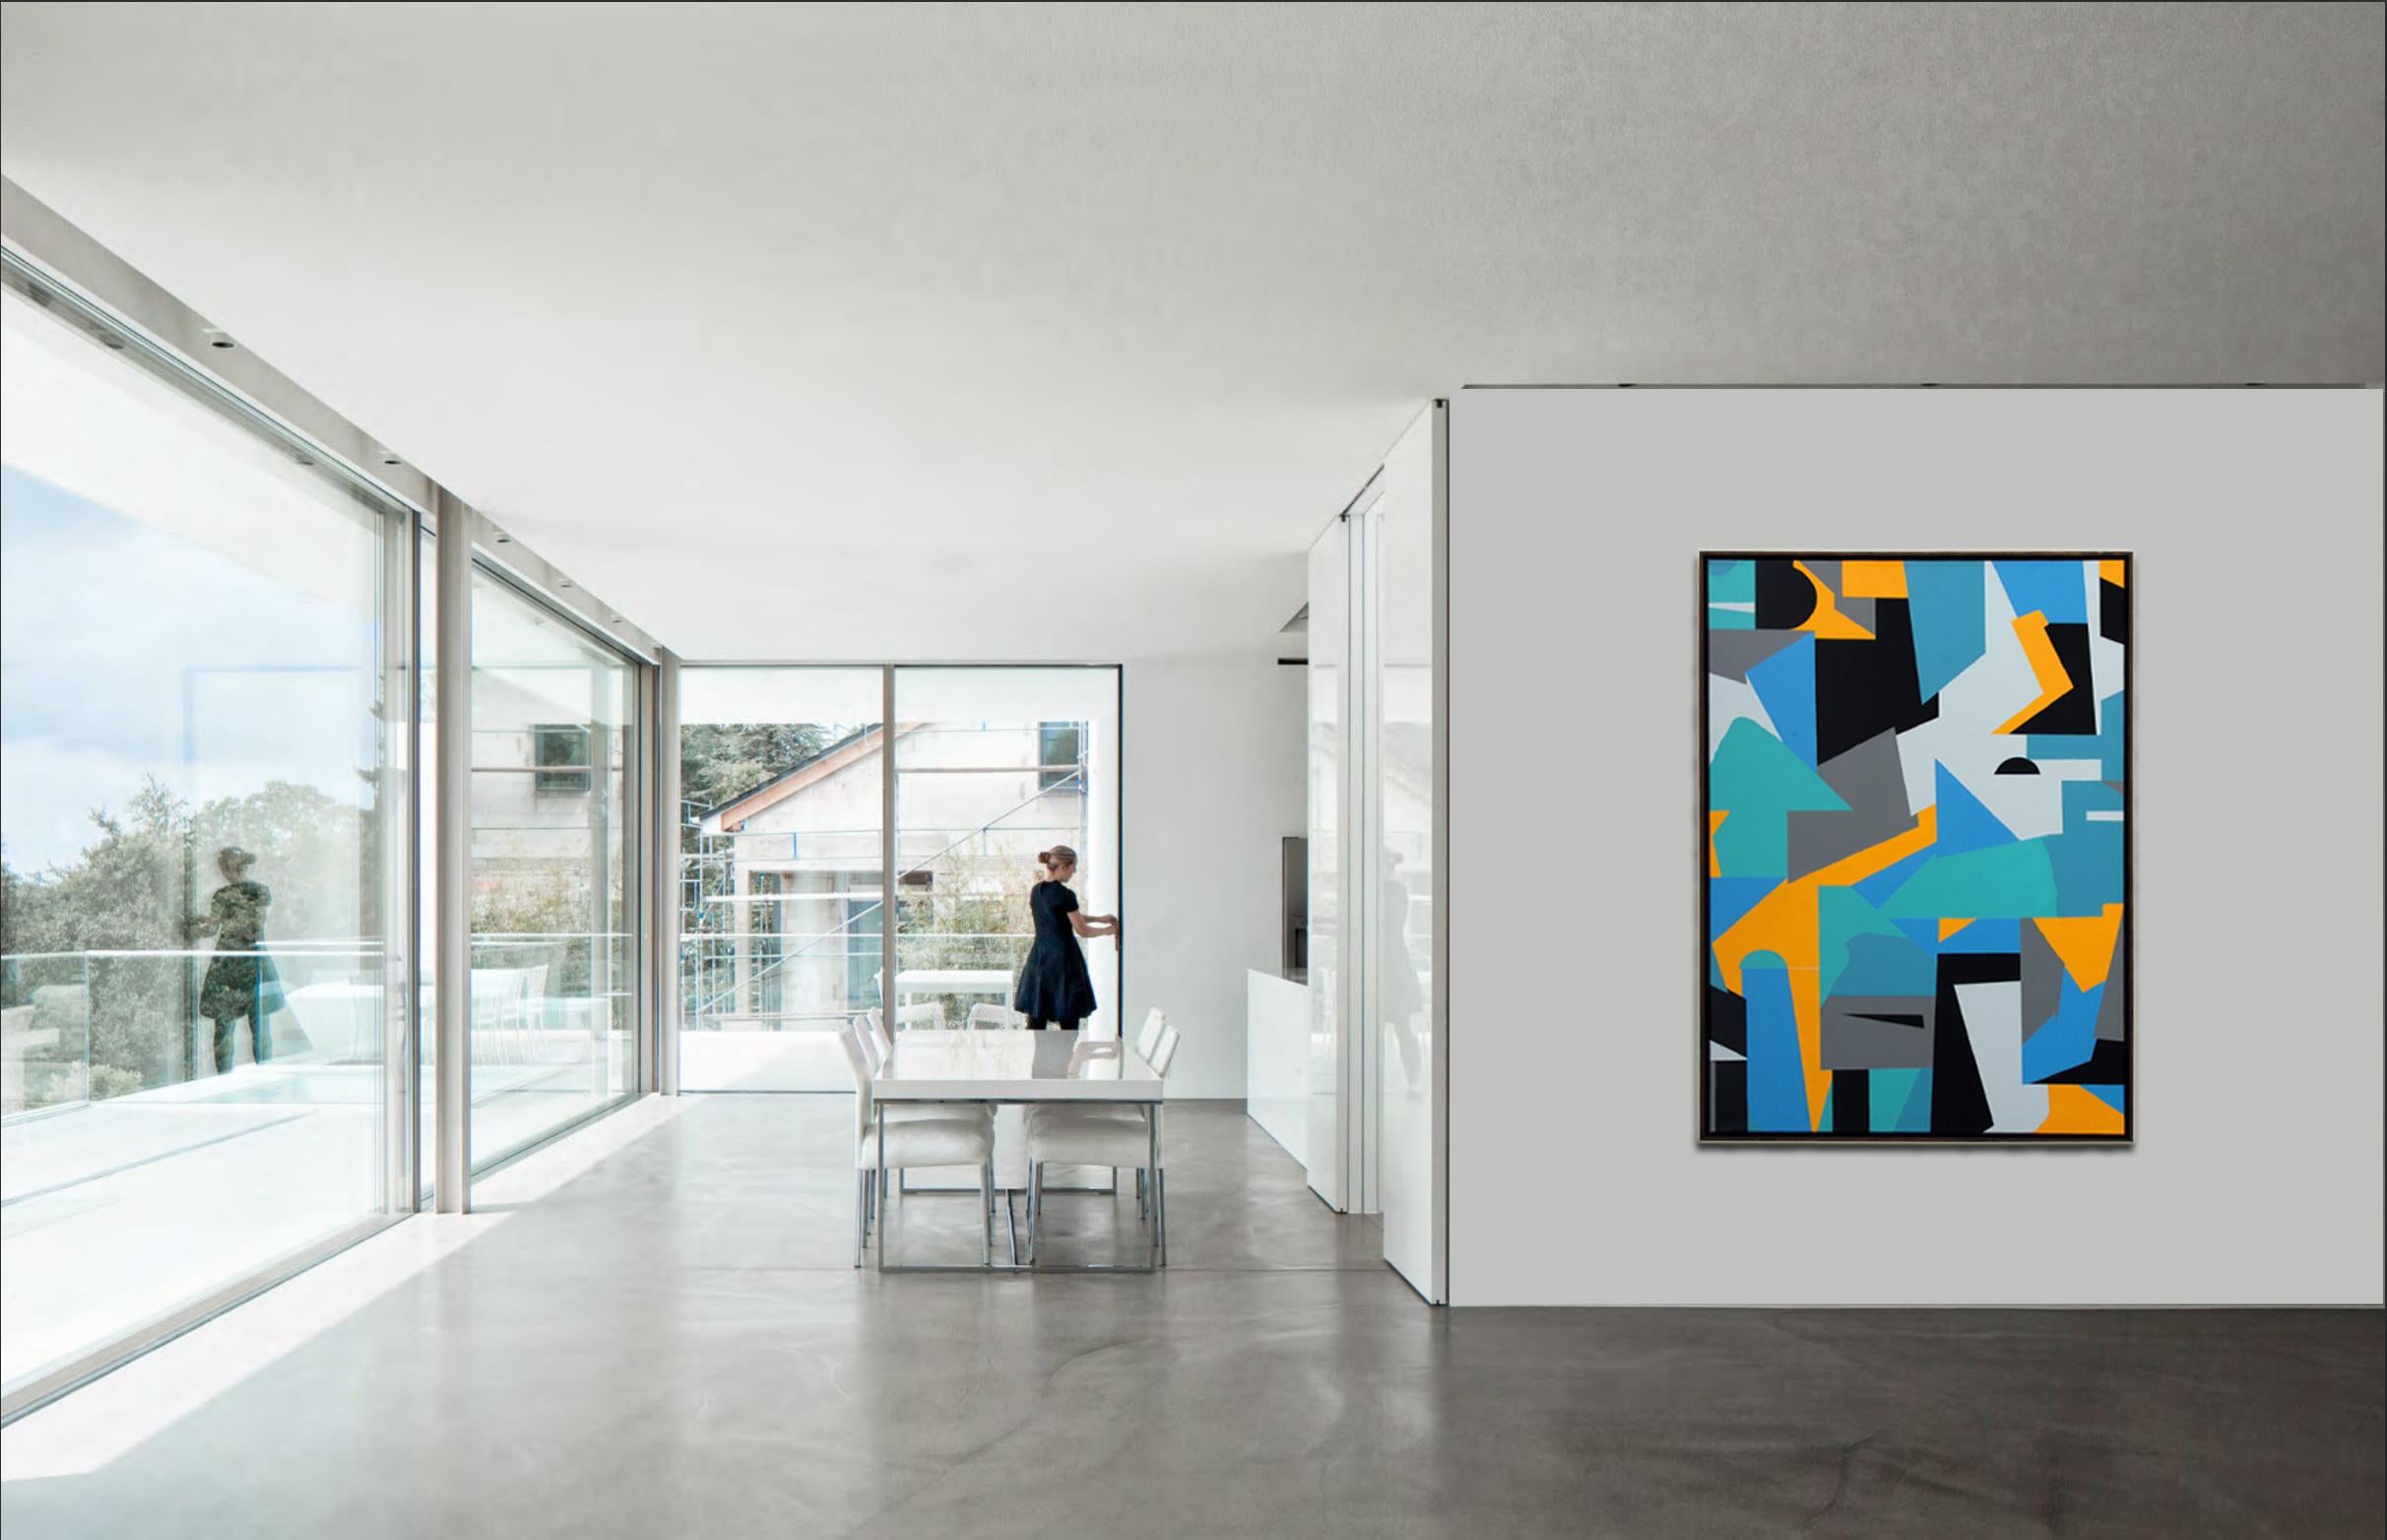 Künstler: Kera

Geometrische Abstraktion in Weiß, Gelb, Schwarz und Blau

Medium: Acryl und Sprühfarbe auf Leinwand, gerahmt in dünnem Holzrahmen.

Größe: 130 x 90